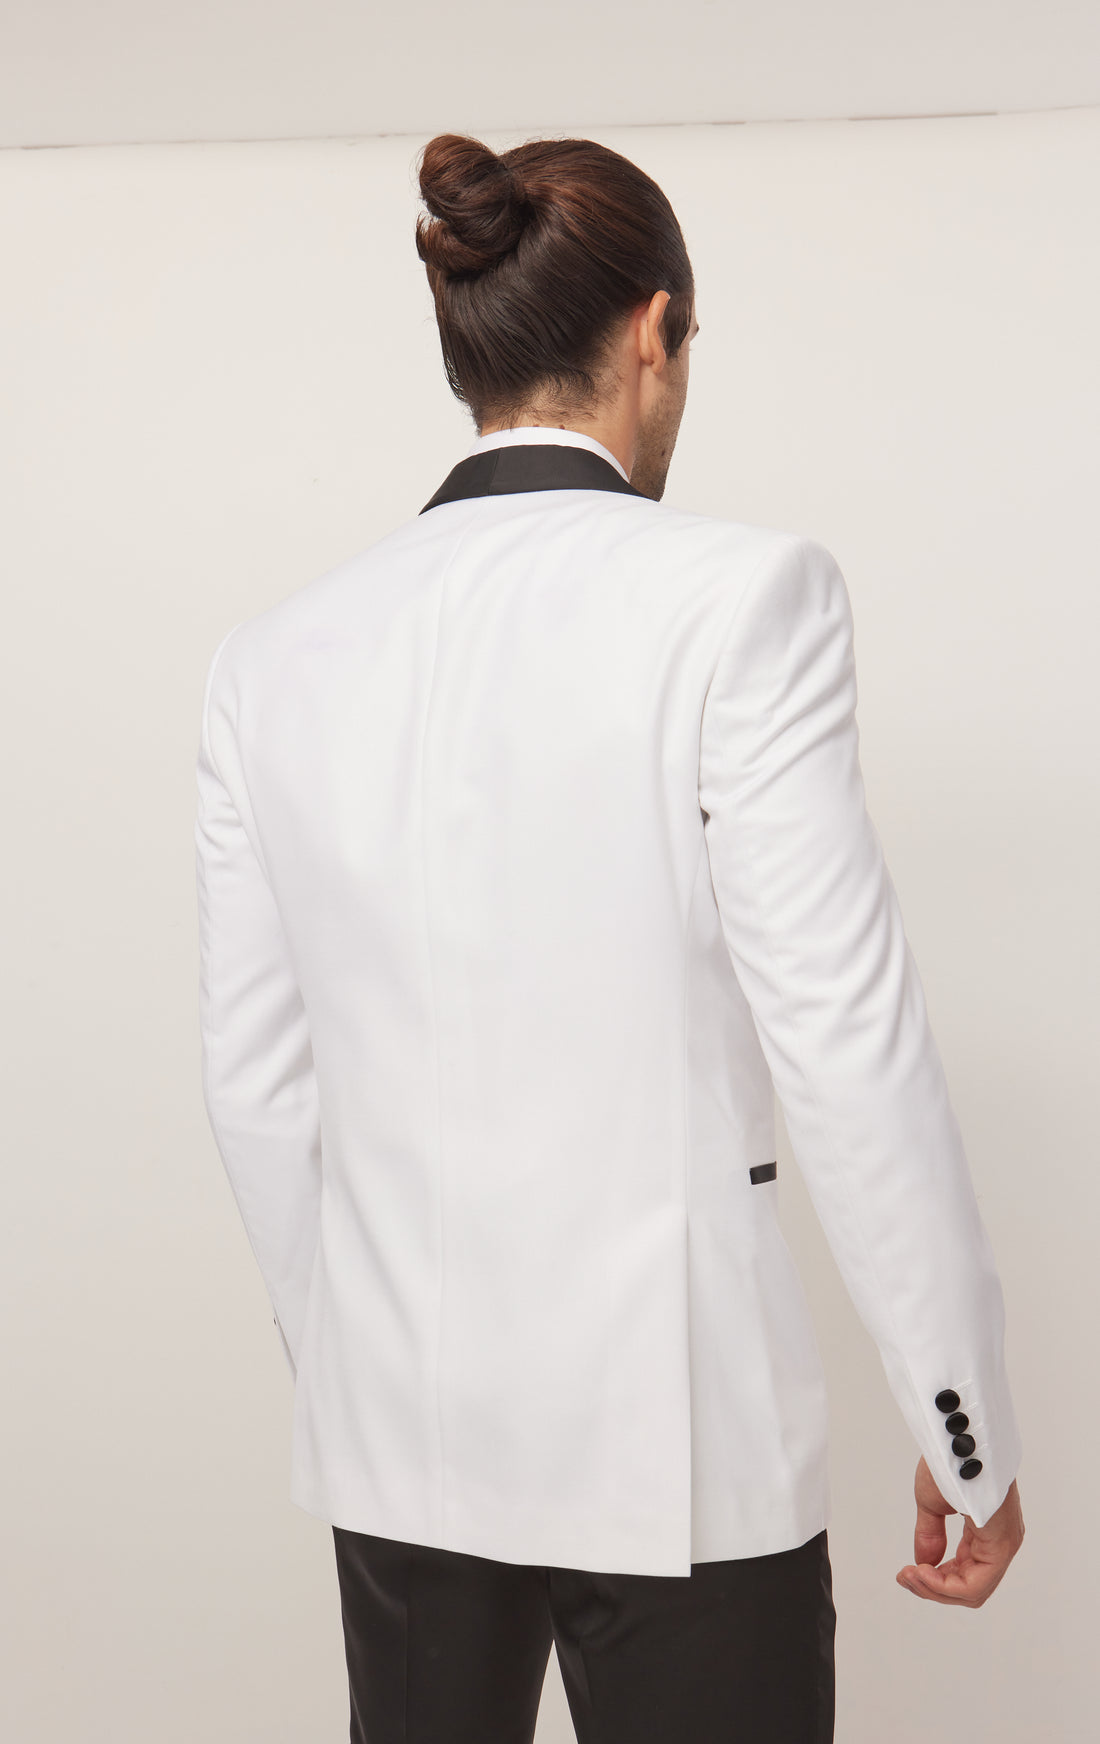 Solid Shawl Lapel Tuxedo Jacket - White